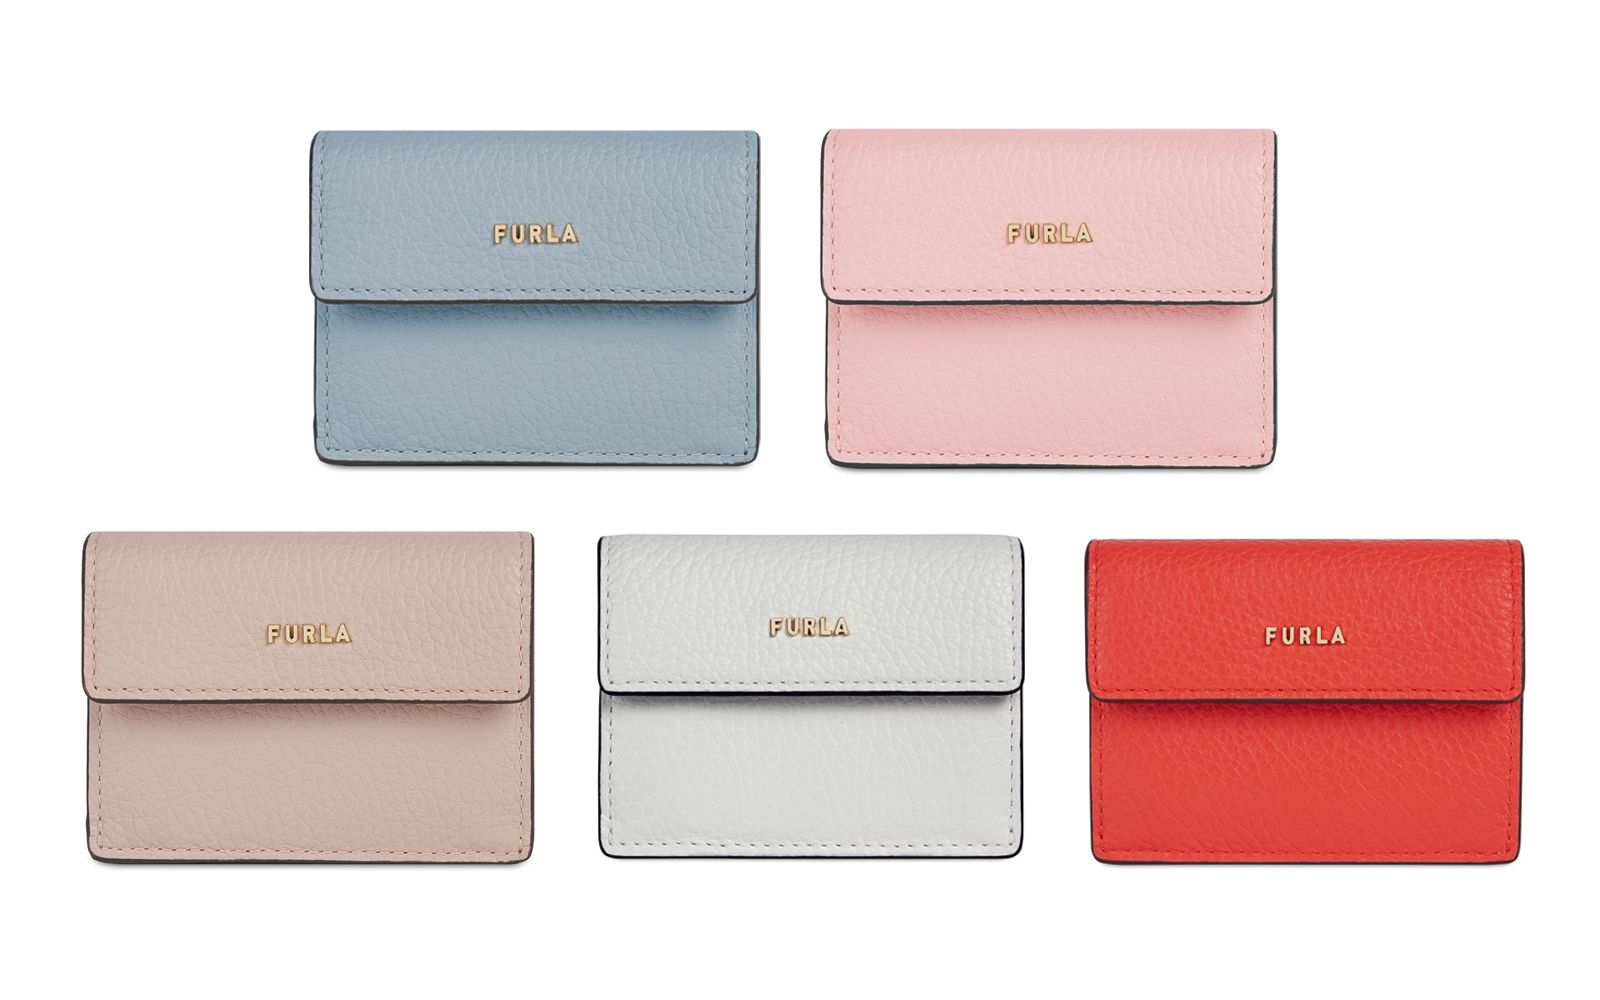 フルラ FURLA 2020年春夏新作 財布 三つ折り財布 バビロン保存袋専用箱付き